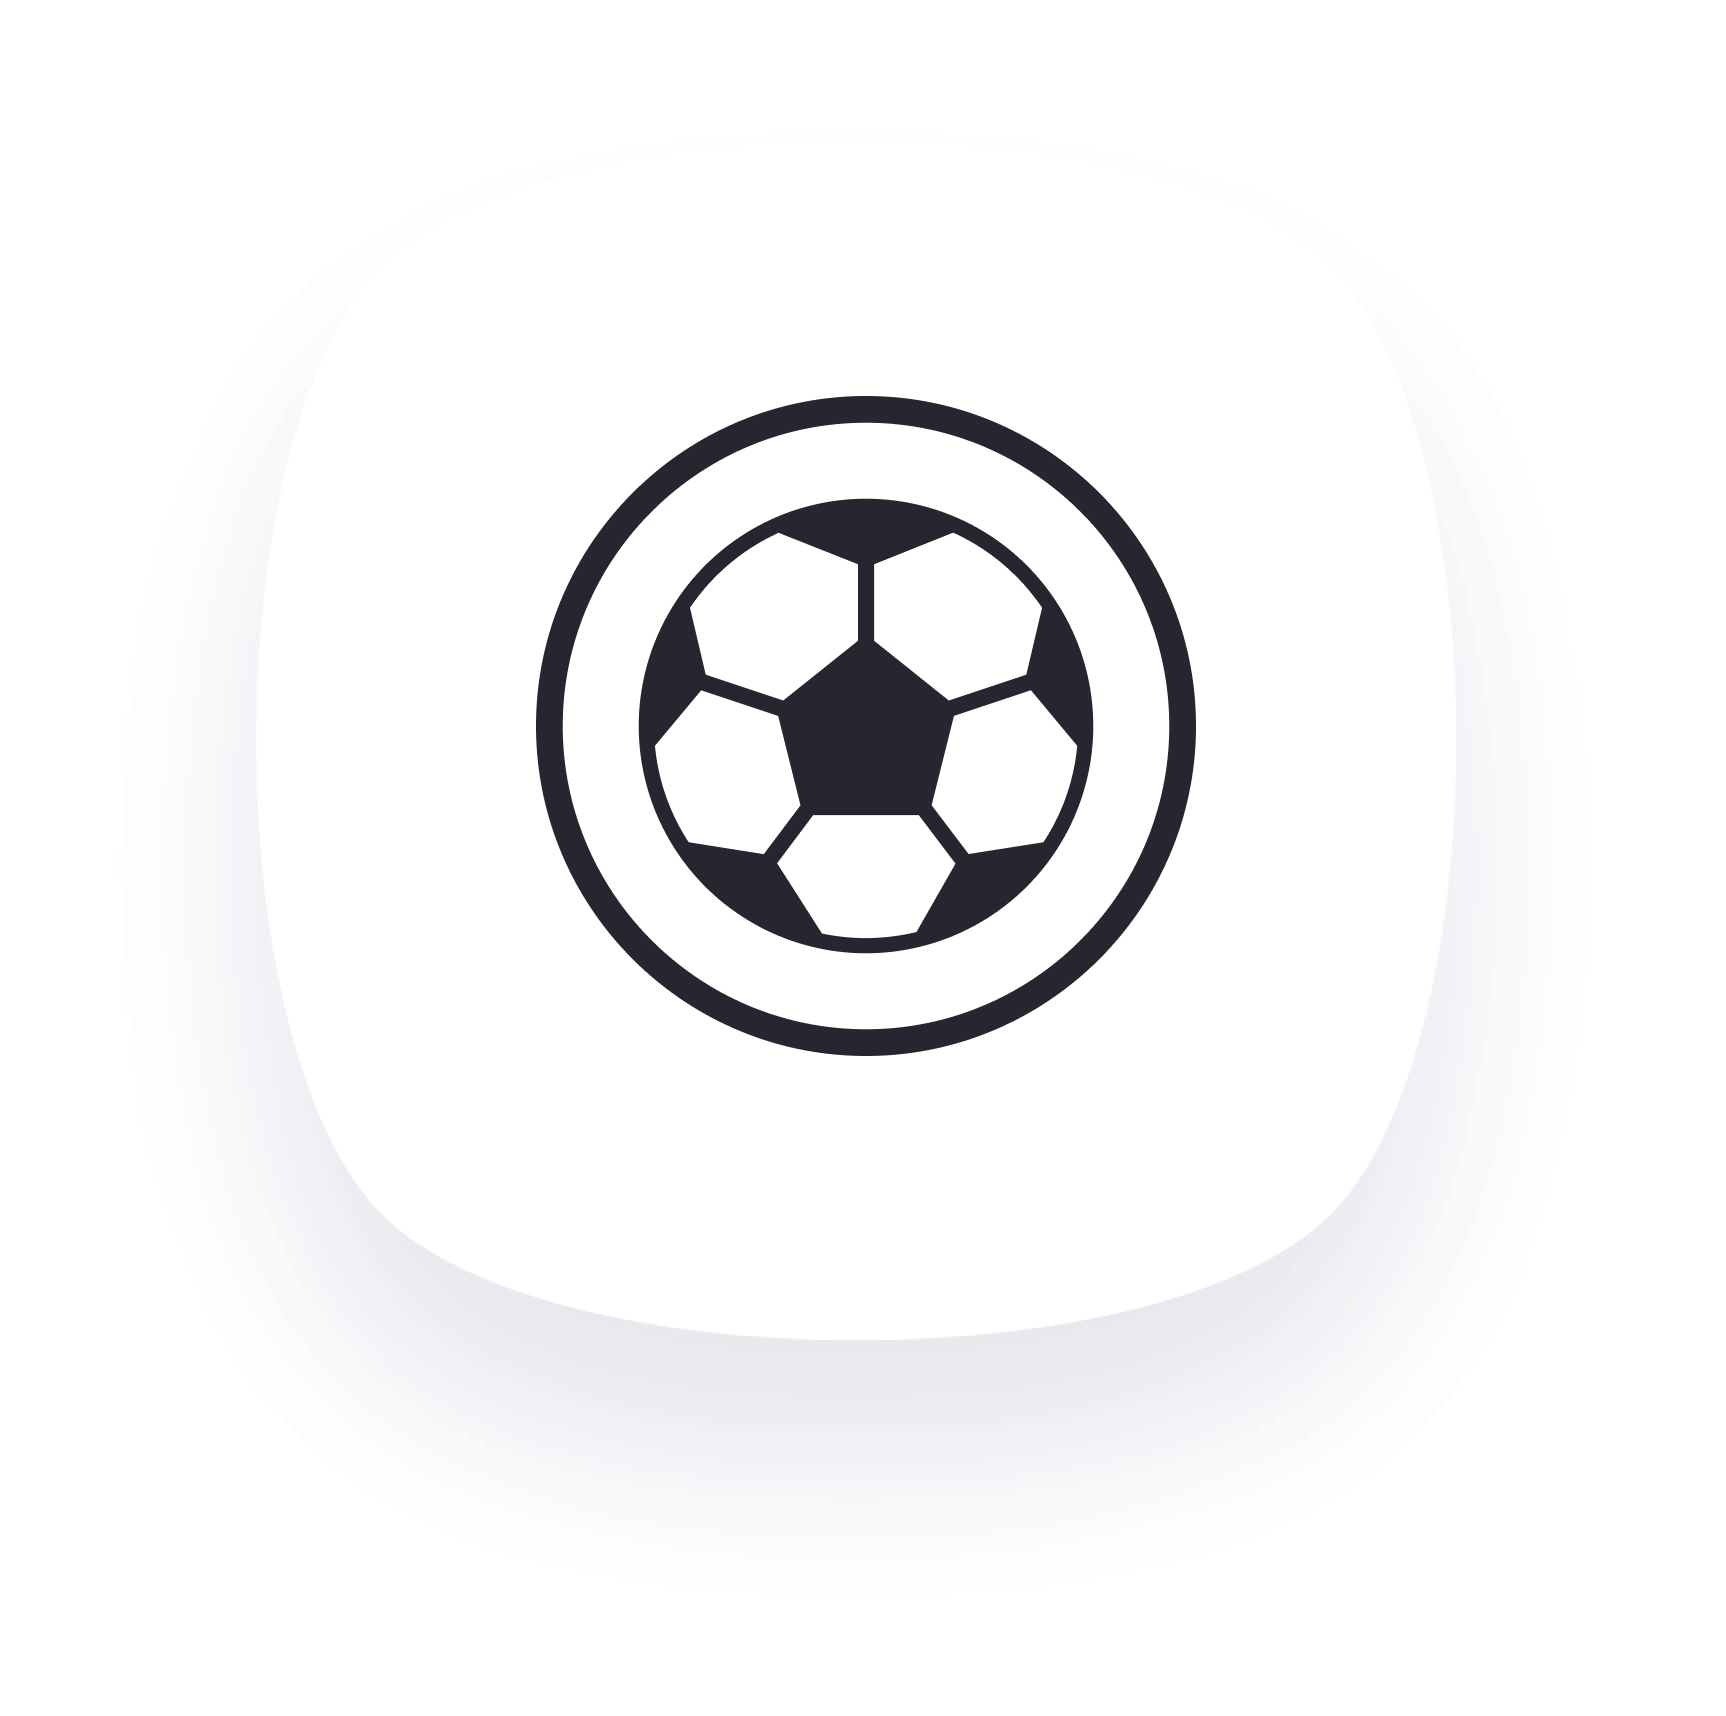 Penality icon